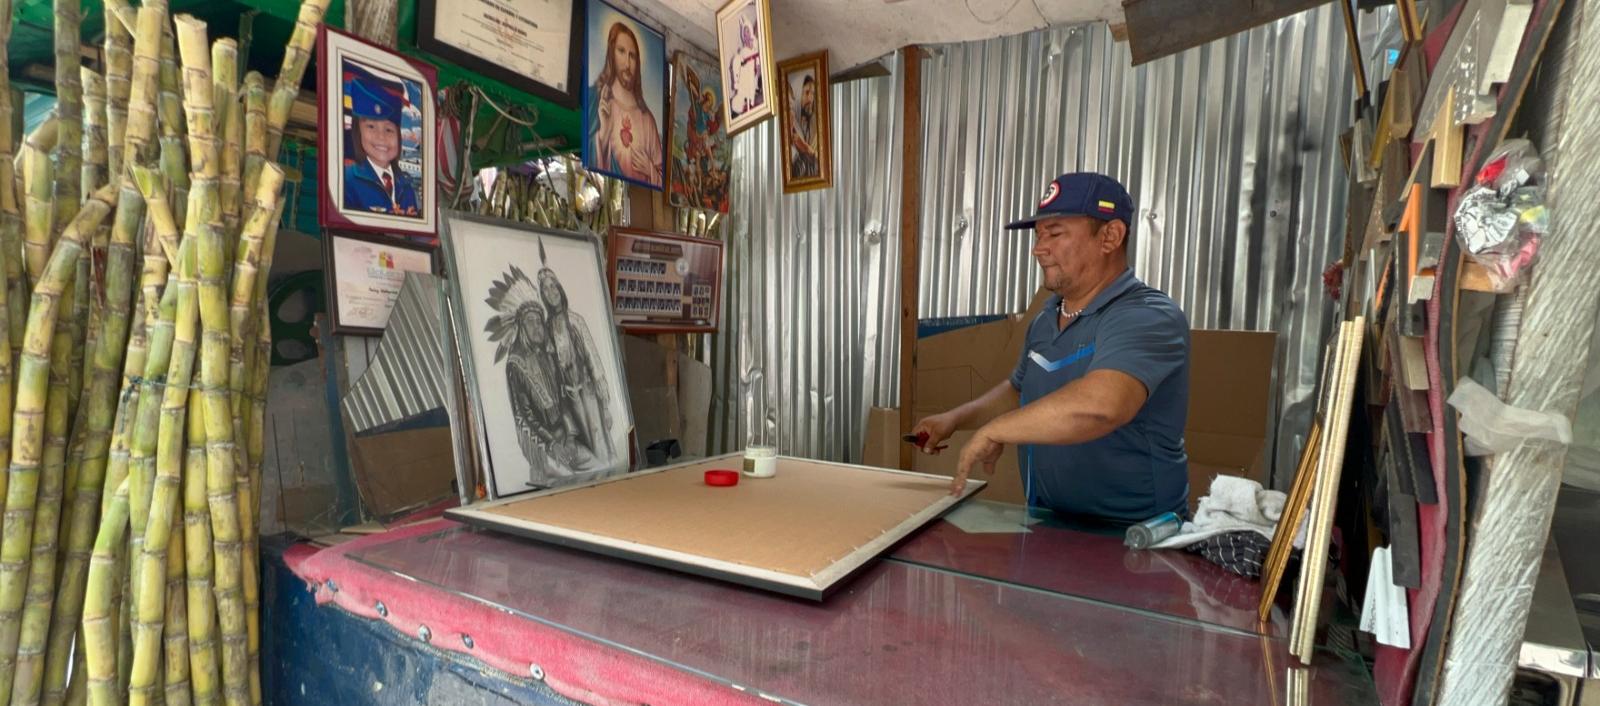 César Llerena tiene una marquetería desde hace 35 años en la vía pública del Centro